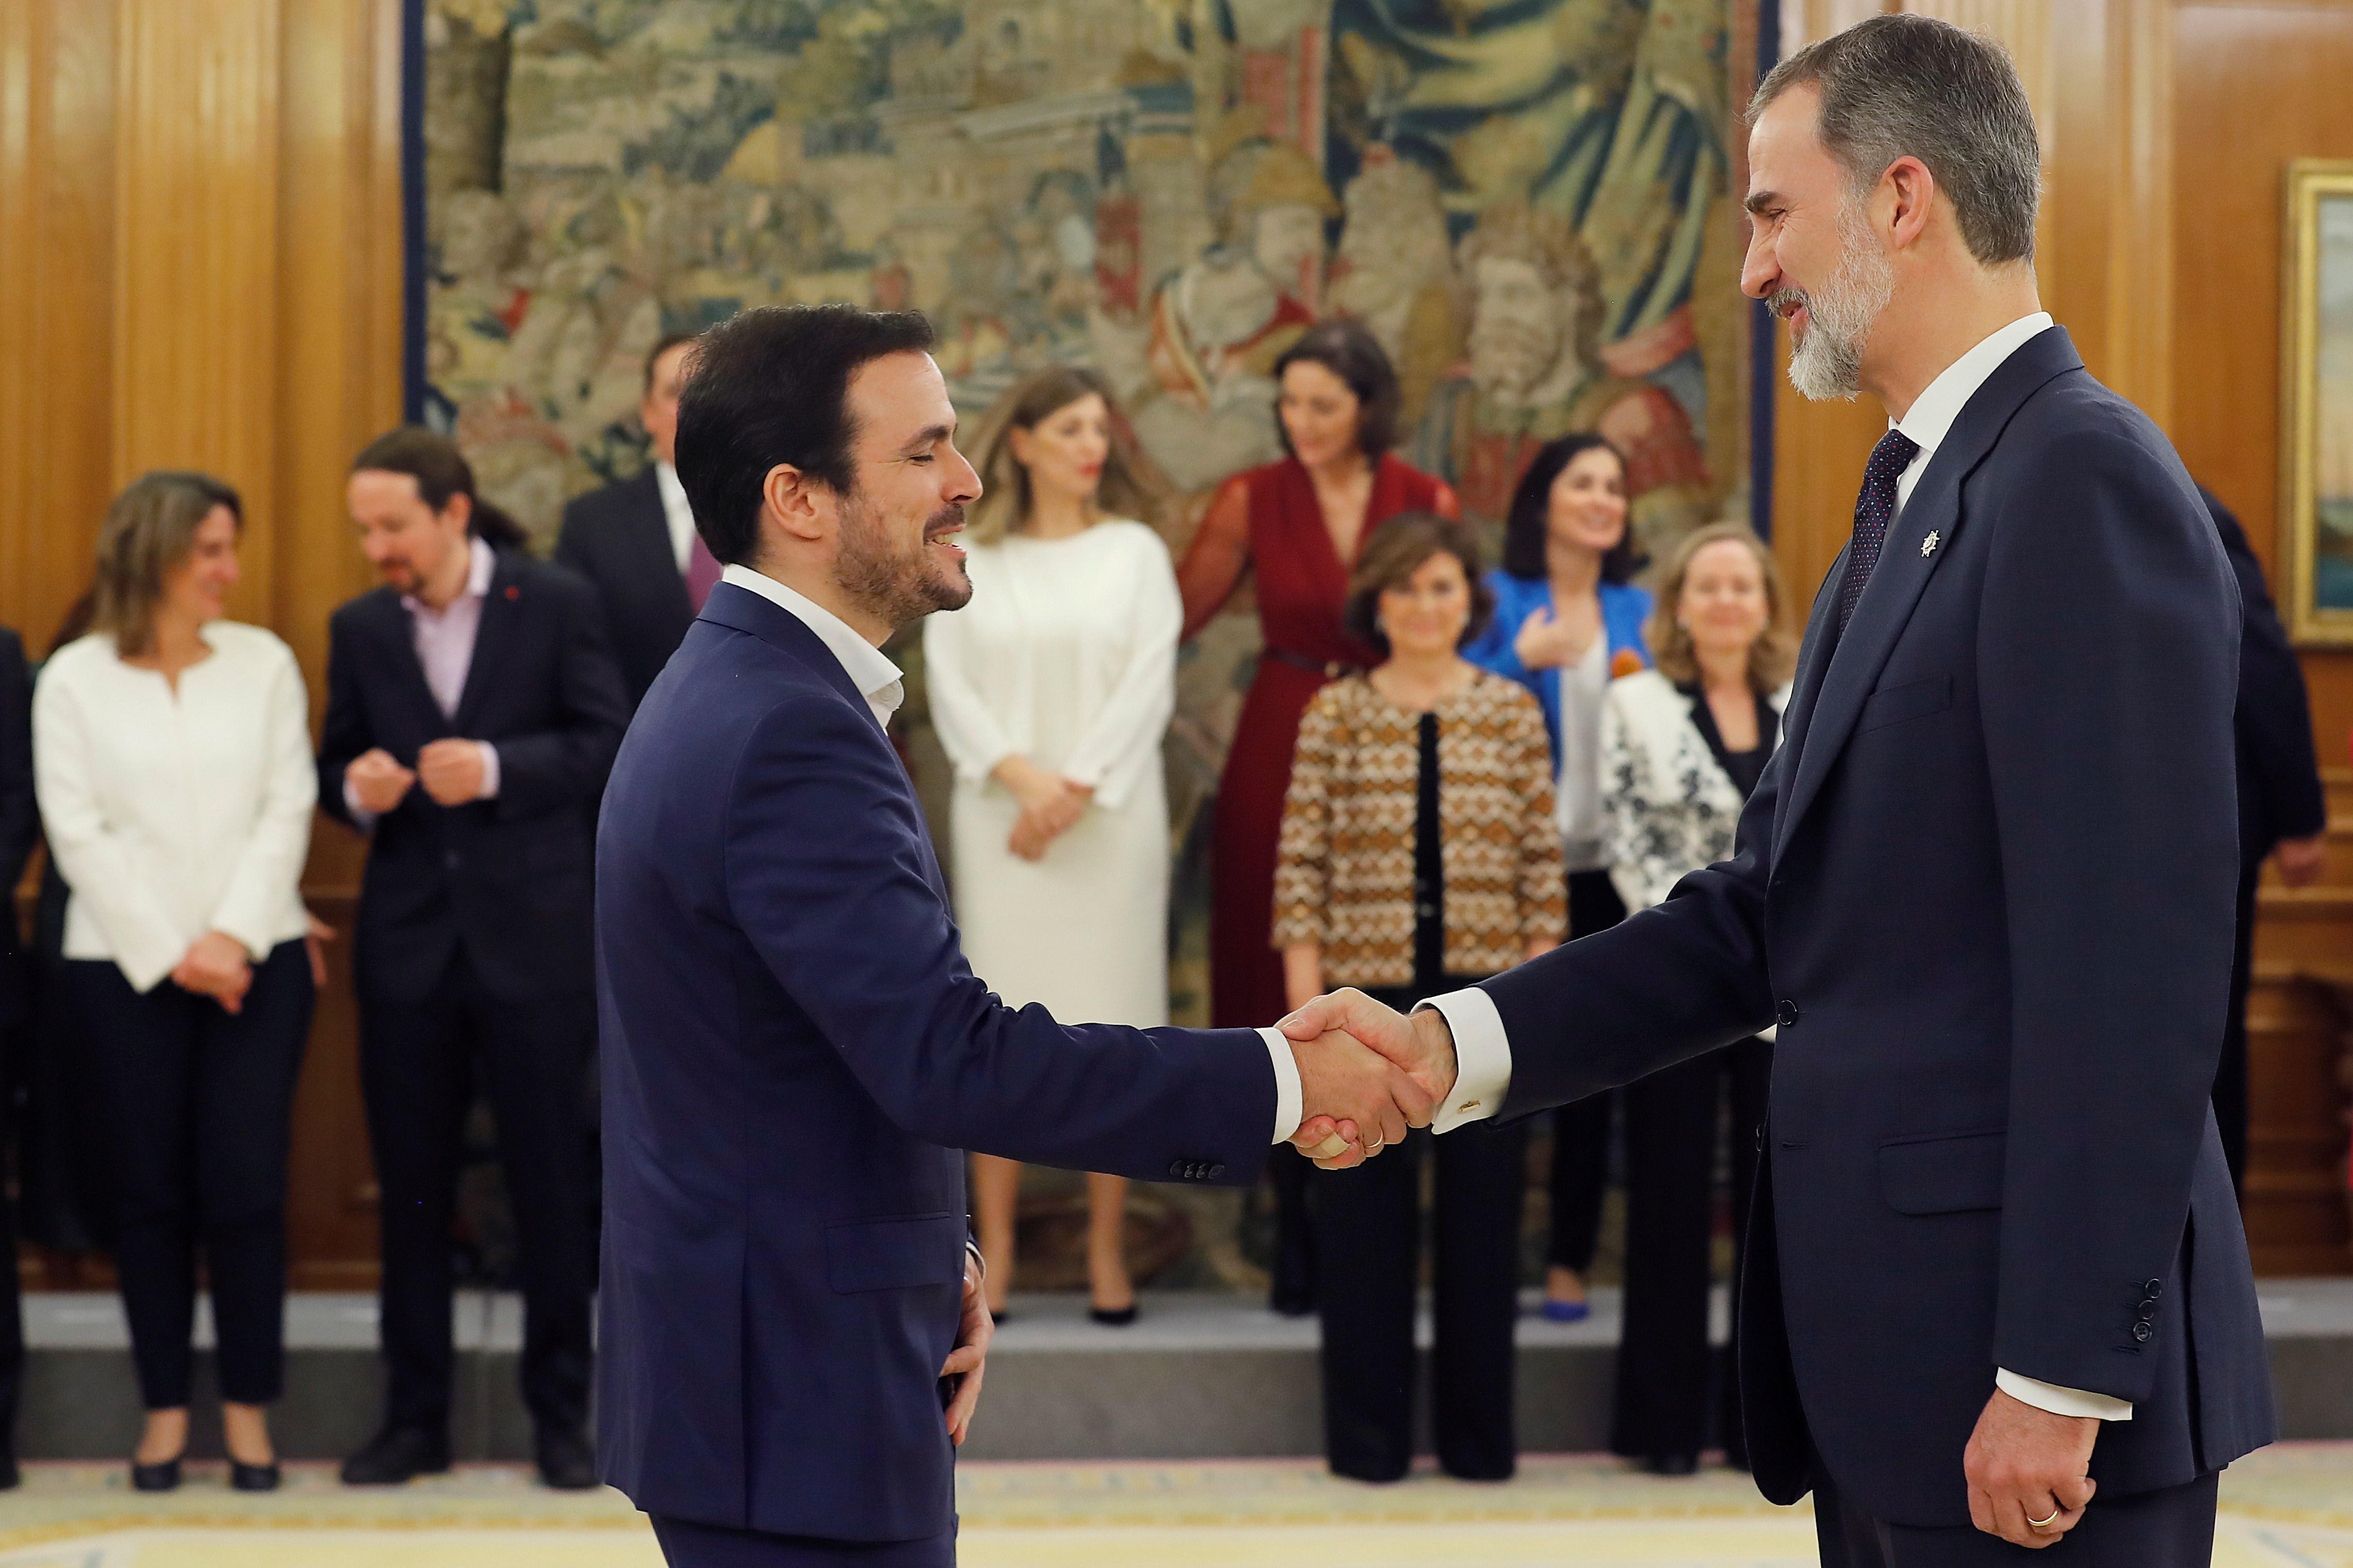 El nuevo ministro de Consumo Alberto Garzón (izq) saluda al Rey Felipe VI (dehc) tras la jura de su cargo en el Palacio de la Zarzuela de Madrid. Europa Press.